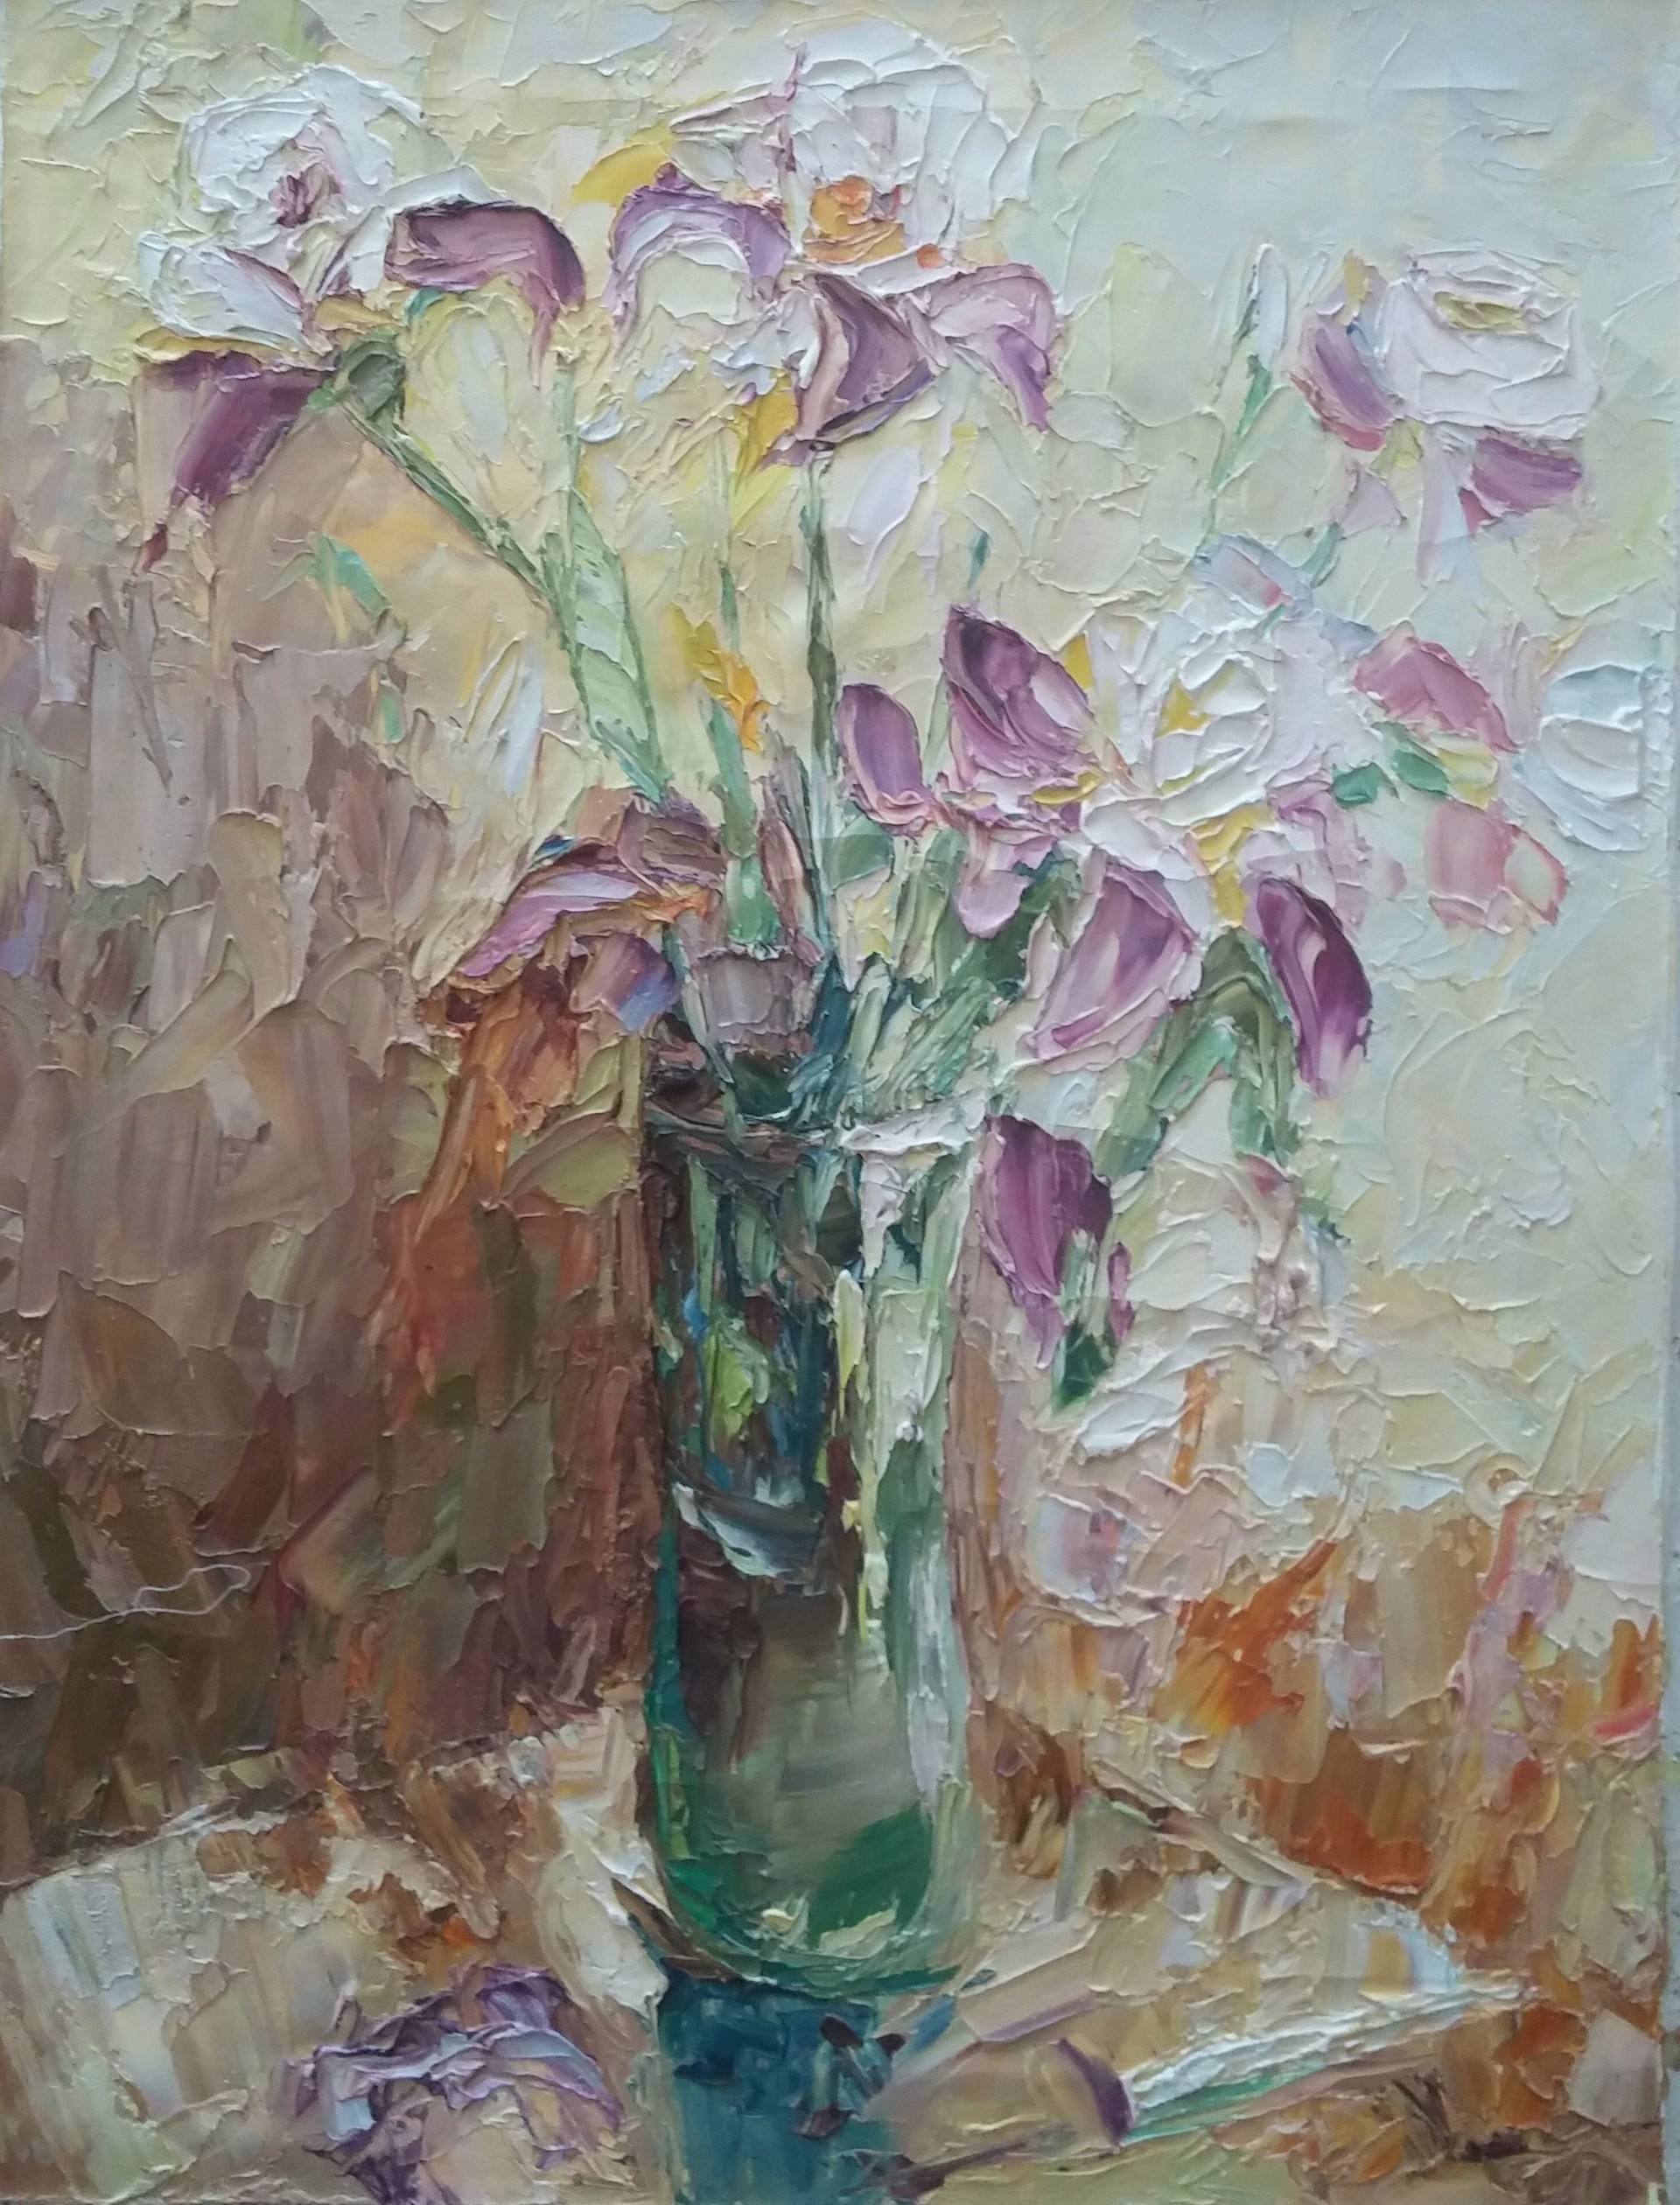 Irises by Tuman Zhumabaev